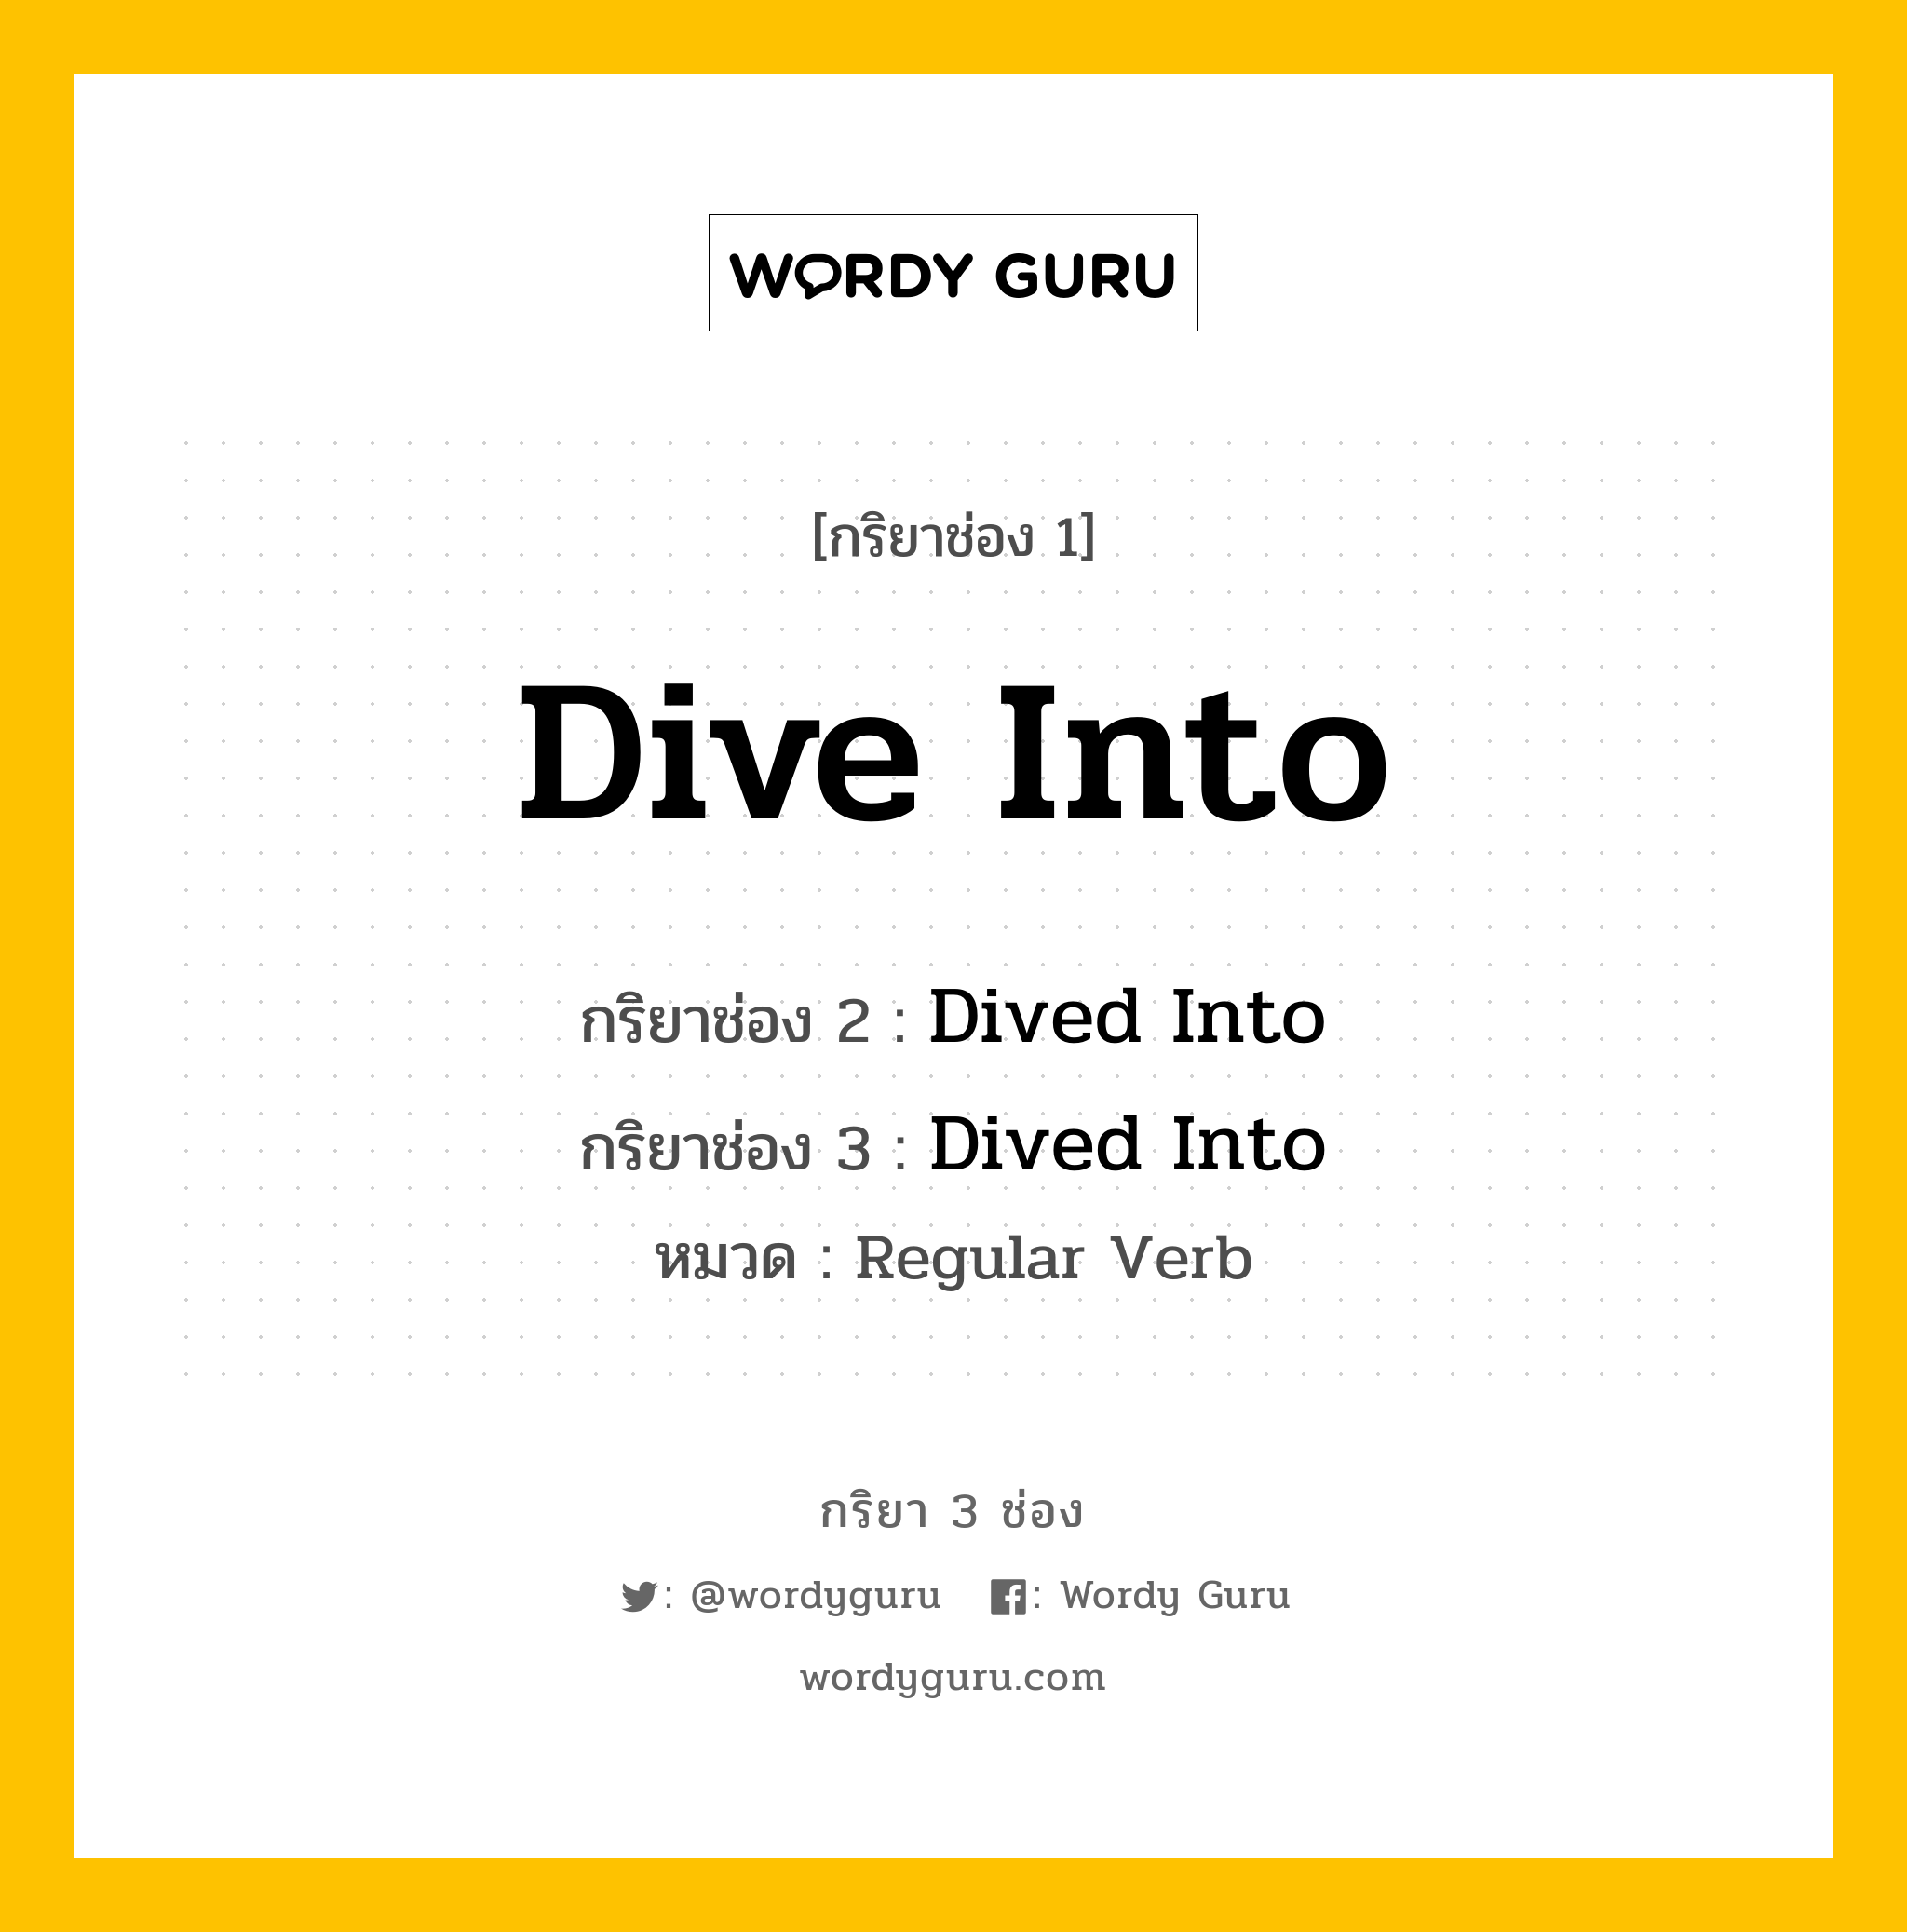 กริยา 3 ช่อง Dive Into ช่อง 2 Dive Into ช่อง 3 คืออะไร, กริยาช่อง 1 Dive Into กริยาช่อง 2 Dived Into กริยาช่อง 3 Dived Into หมวด Regular Verb หมวด Regular Verb